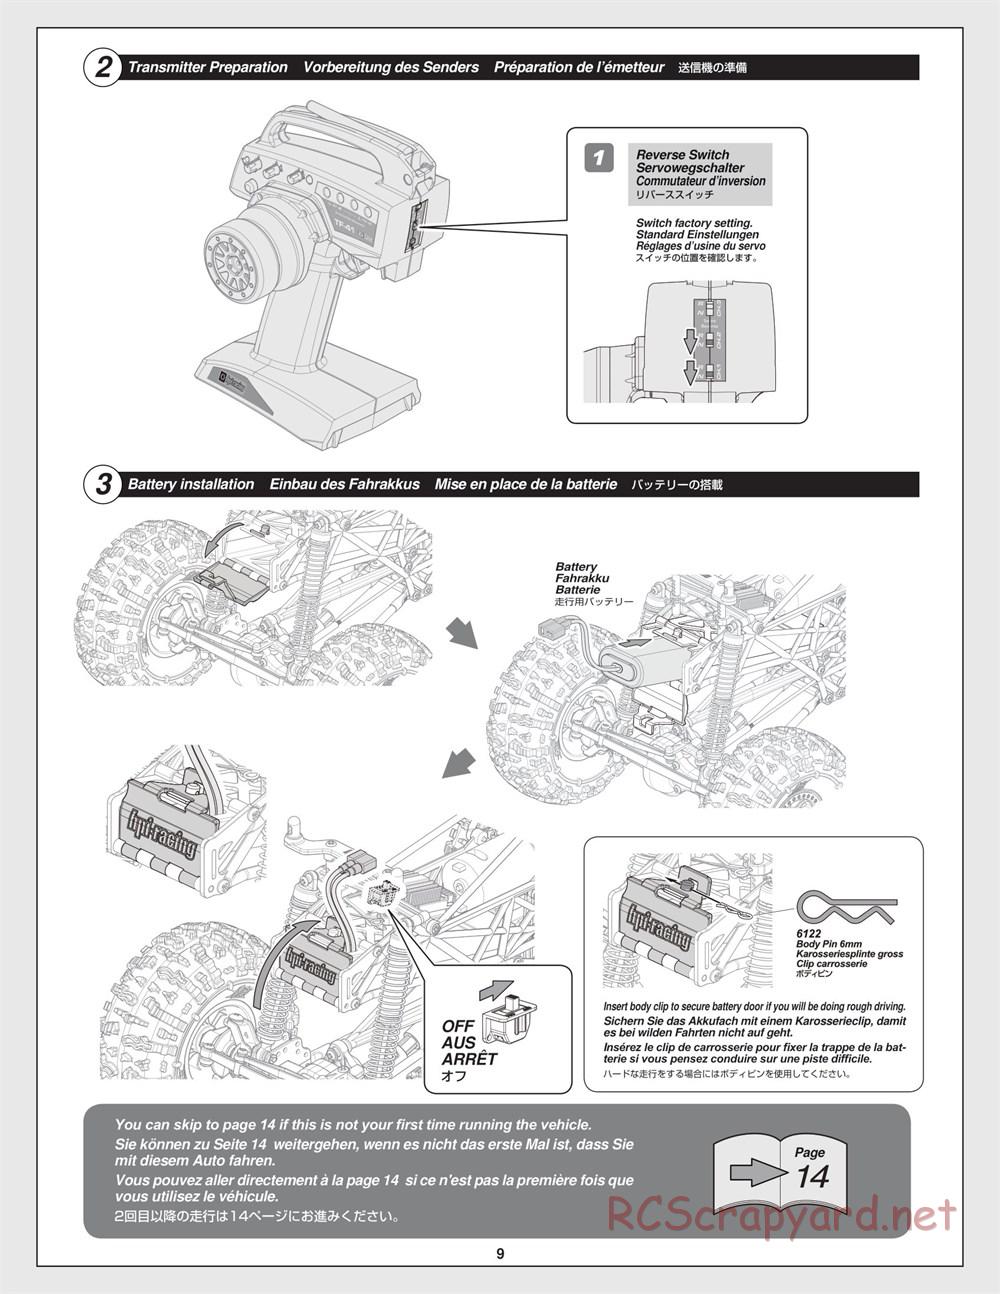 HPI - Crawler King - Manual - Page 9